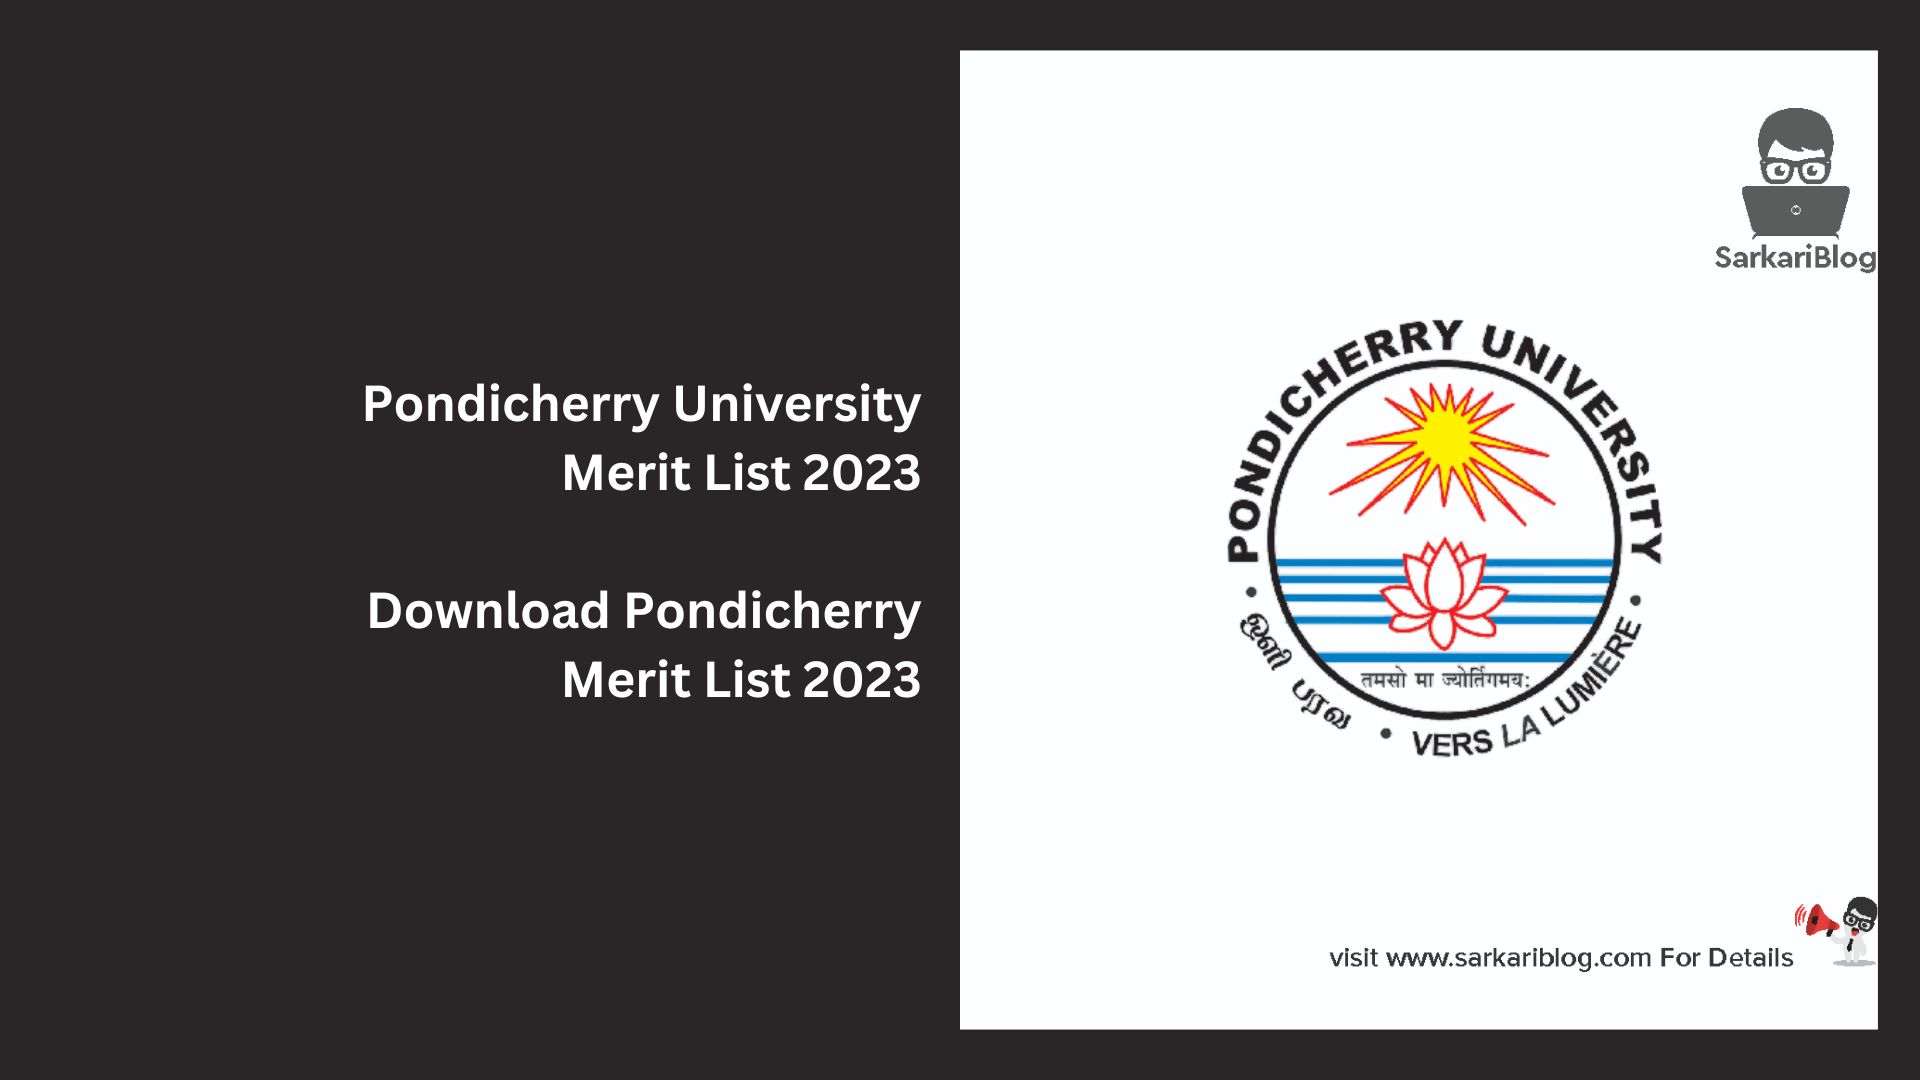 Pondicherry University Merit List 2023